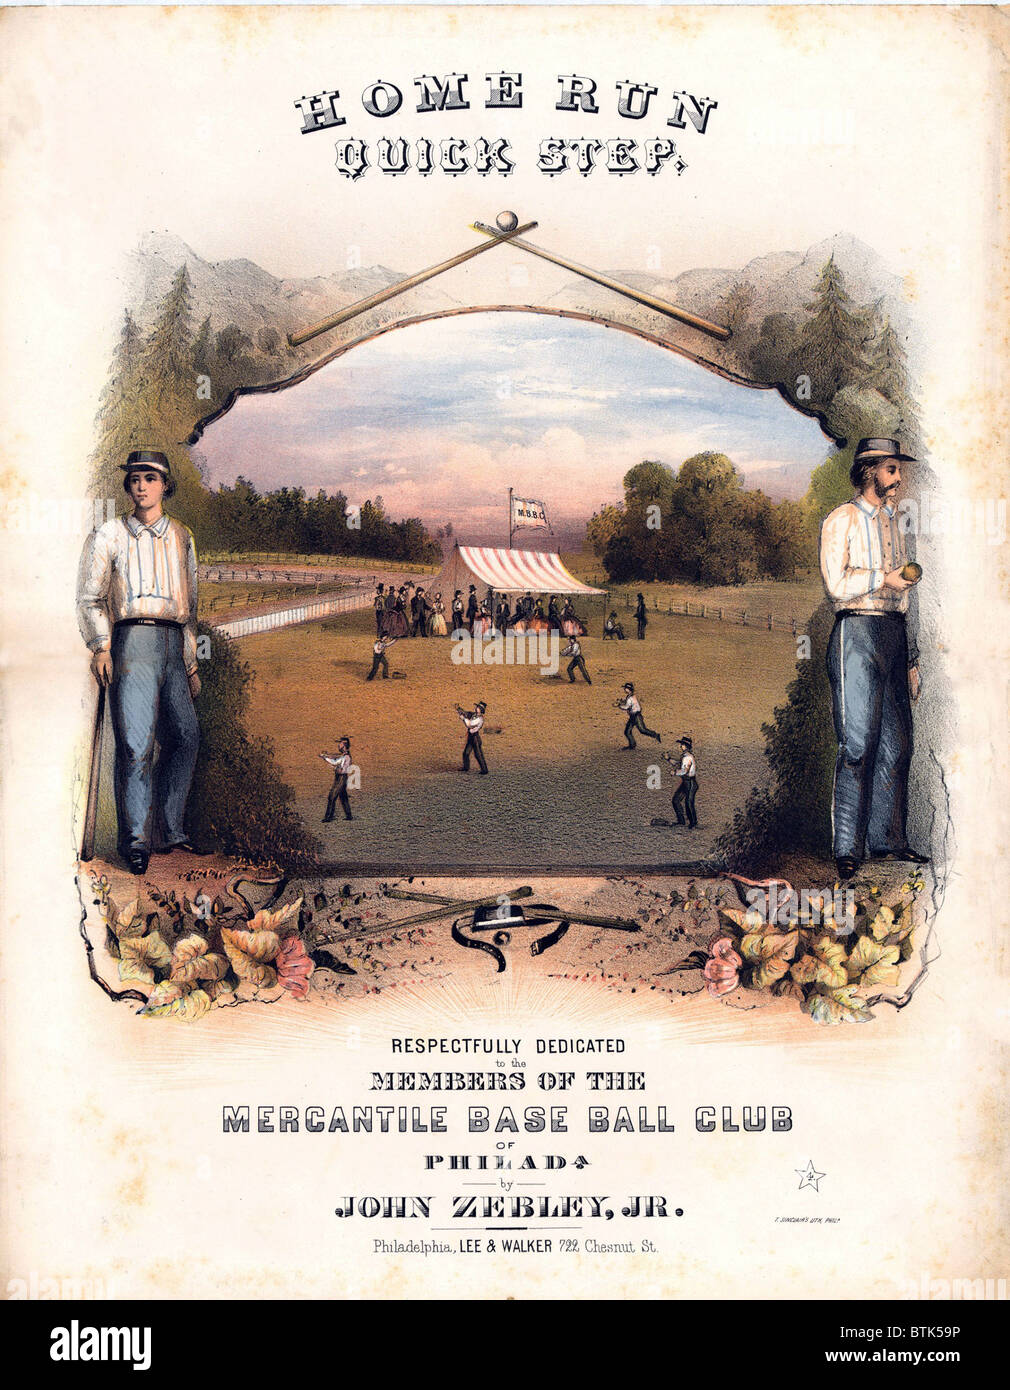 Partitions pour couvrir montrant des joueurs de baseball sur le terrain et les spectateurs sous la tente de la Mercantile Base Ball Club de Philadelphie. 1861. Banque D'Images